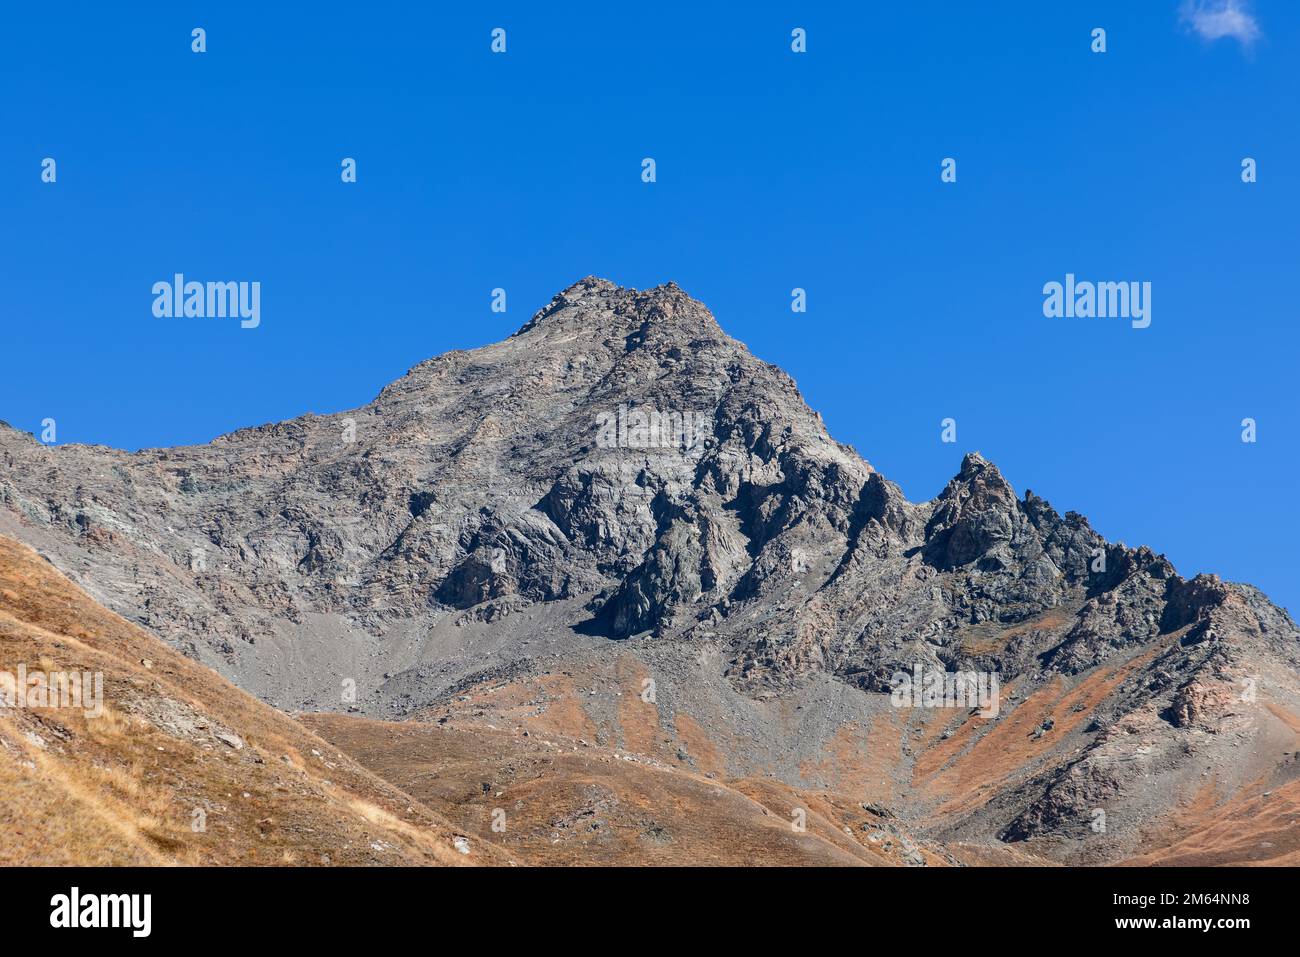 Granito inexpugnable ladera de montaña empinada negra y rocas afiladas con pico superior bajo fondo de cielo azul claro. Parque Nacional Gran Paradiso Foto de stock